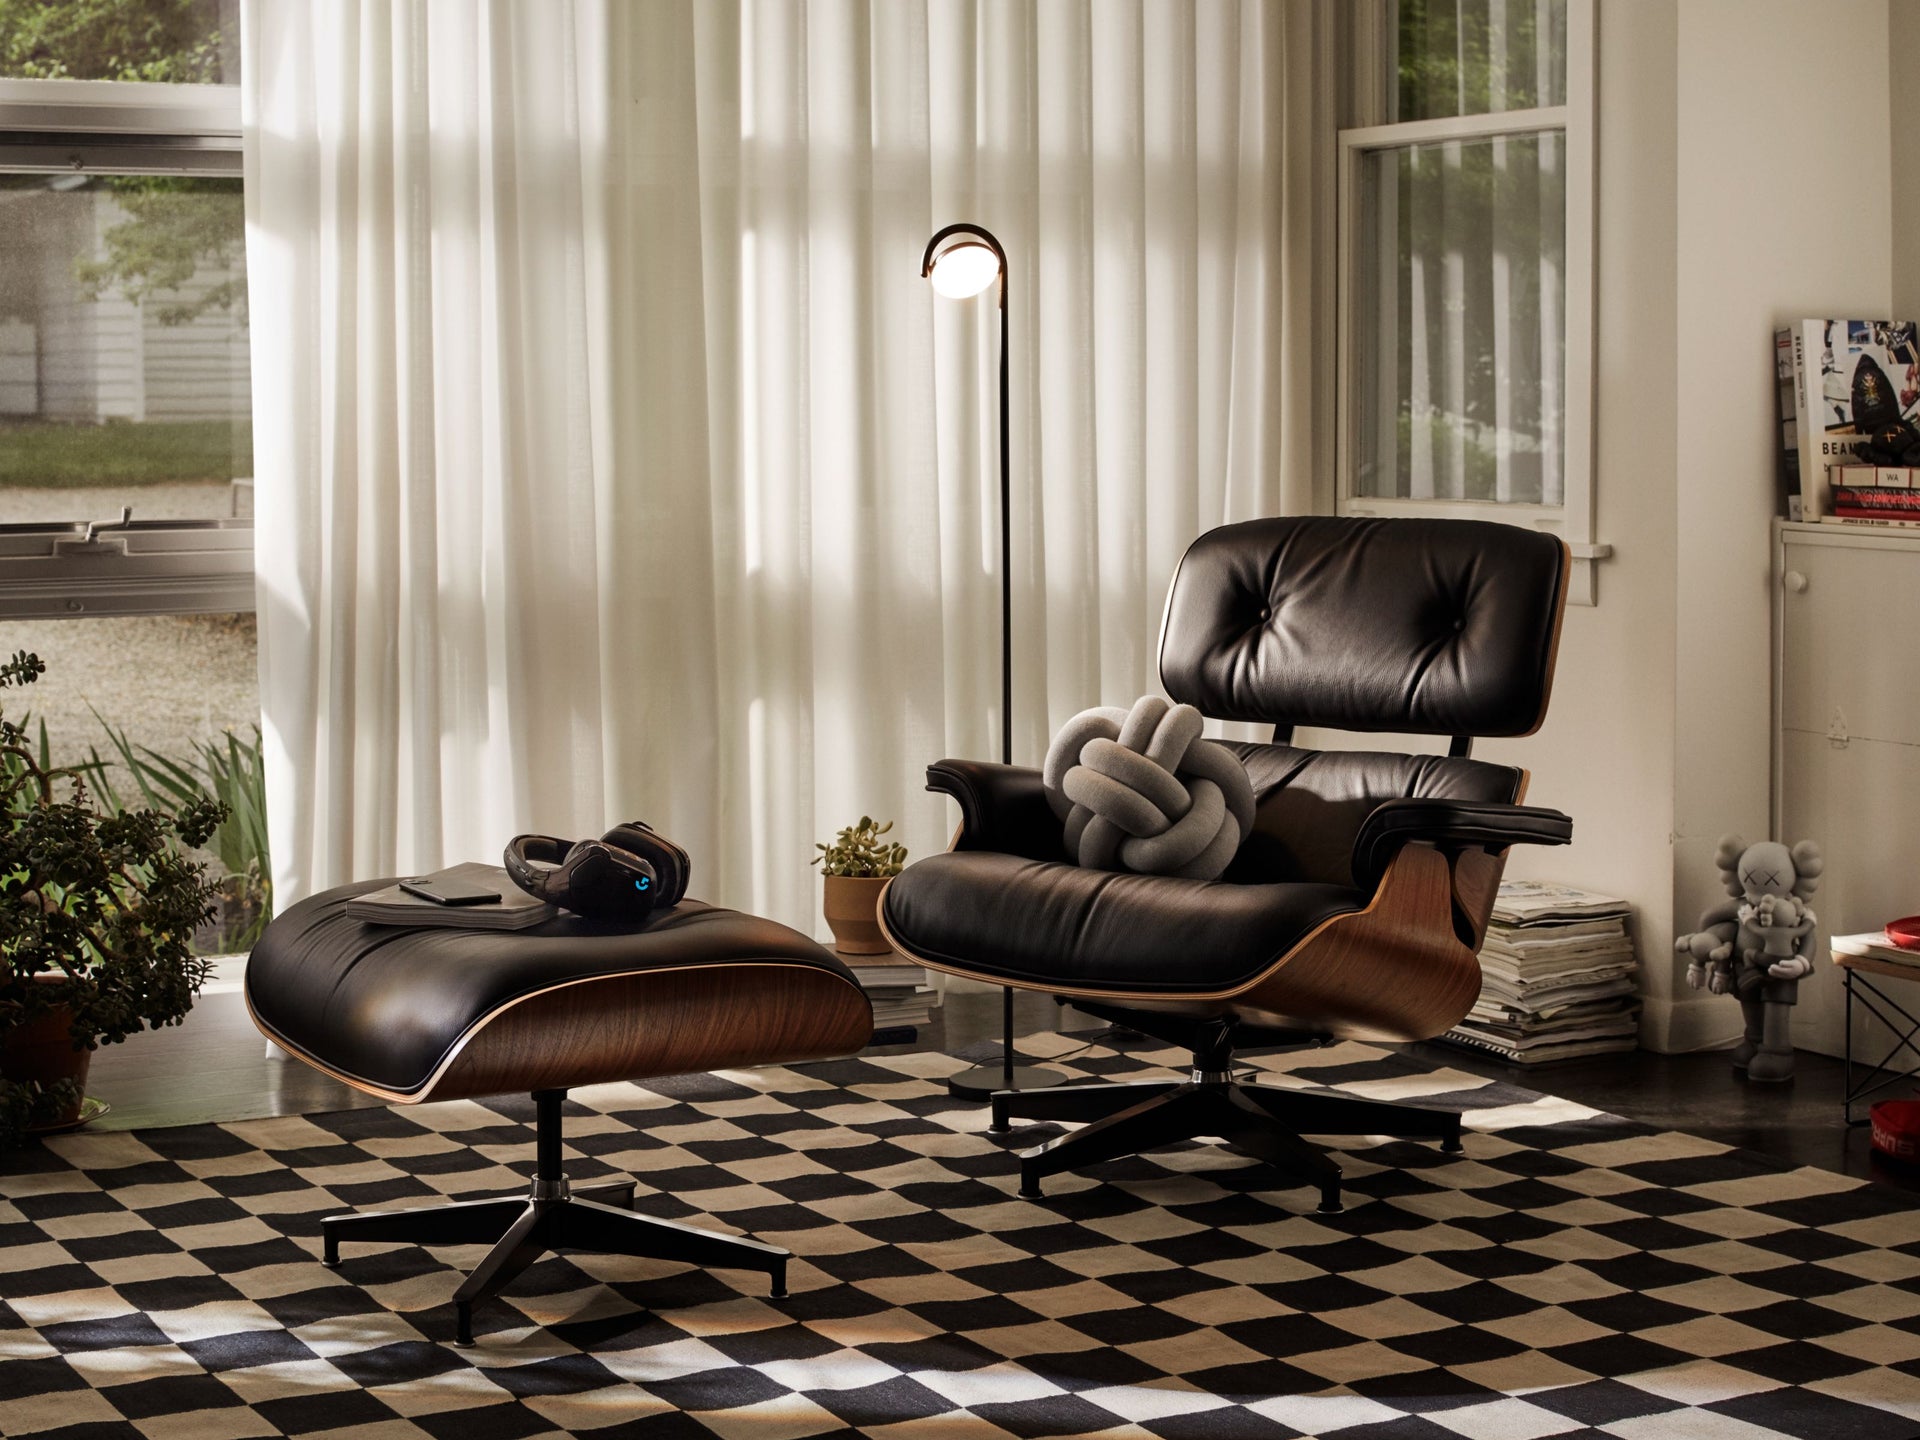 검은 가죽의 Eames Lounge Chair가 체크무늬의 깔개 위에 있습니다.